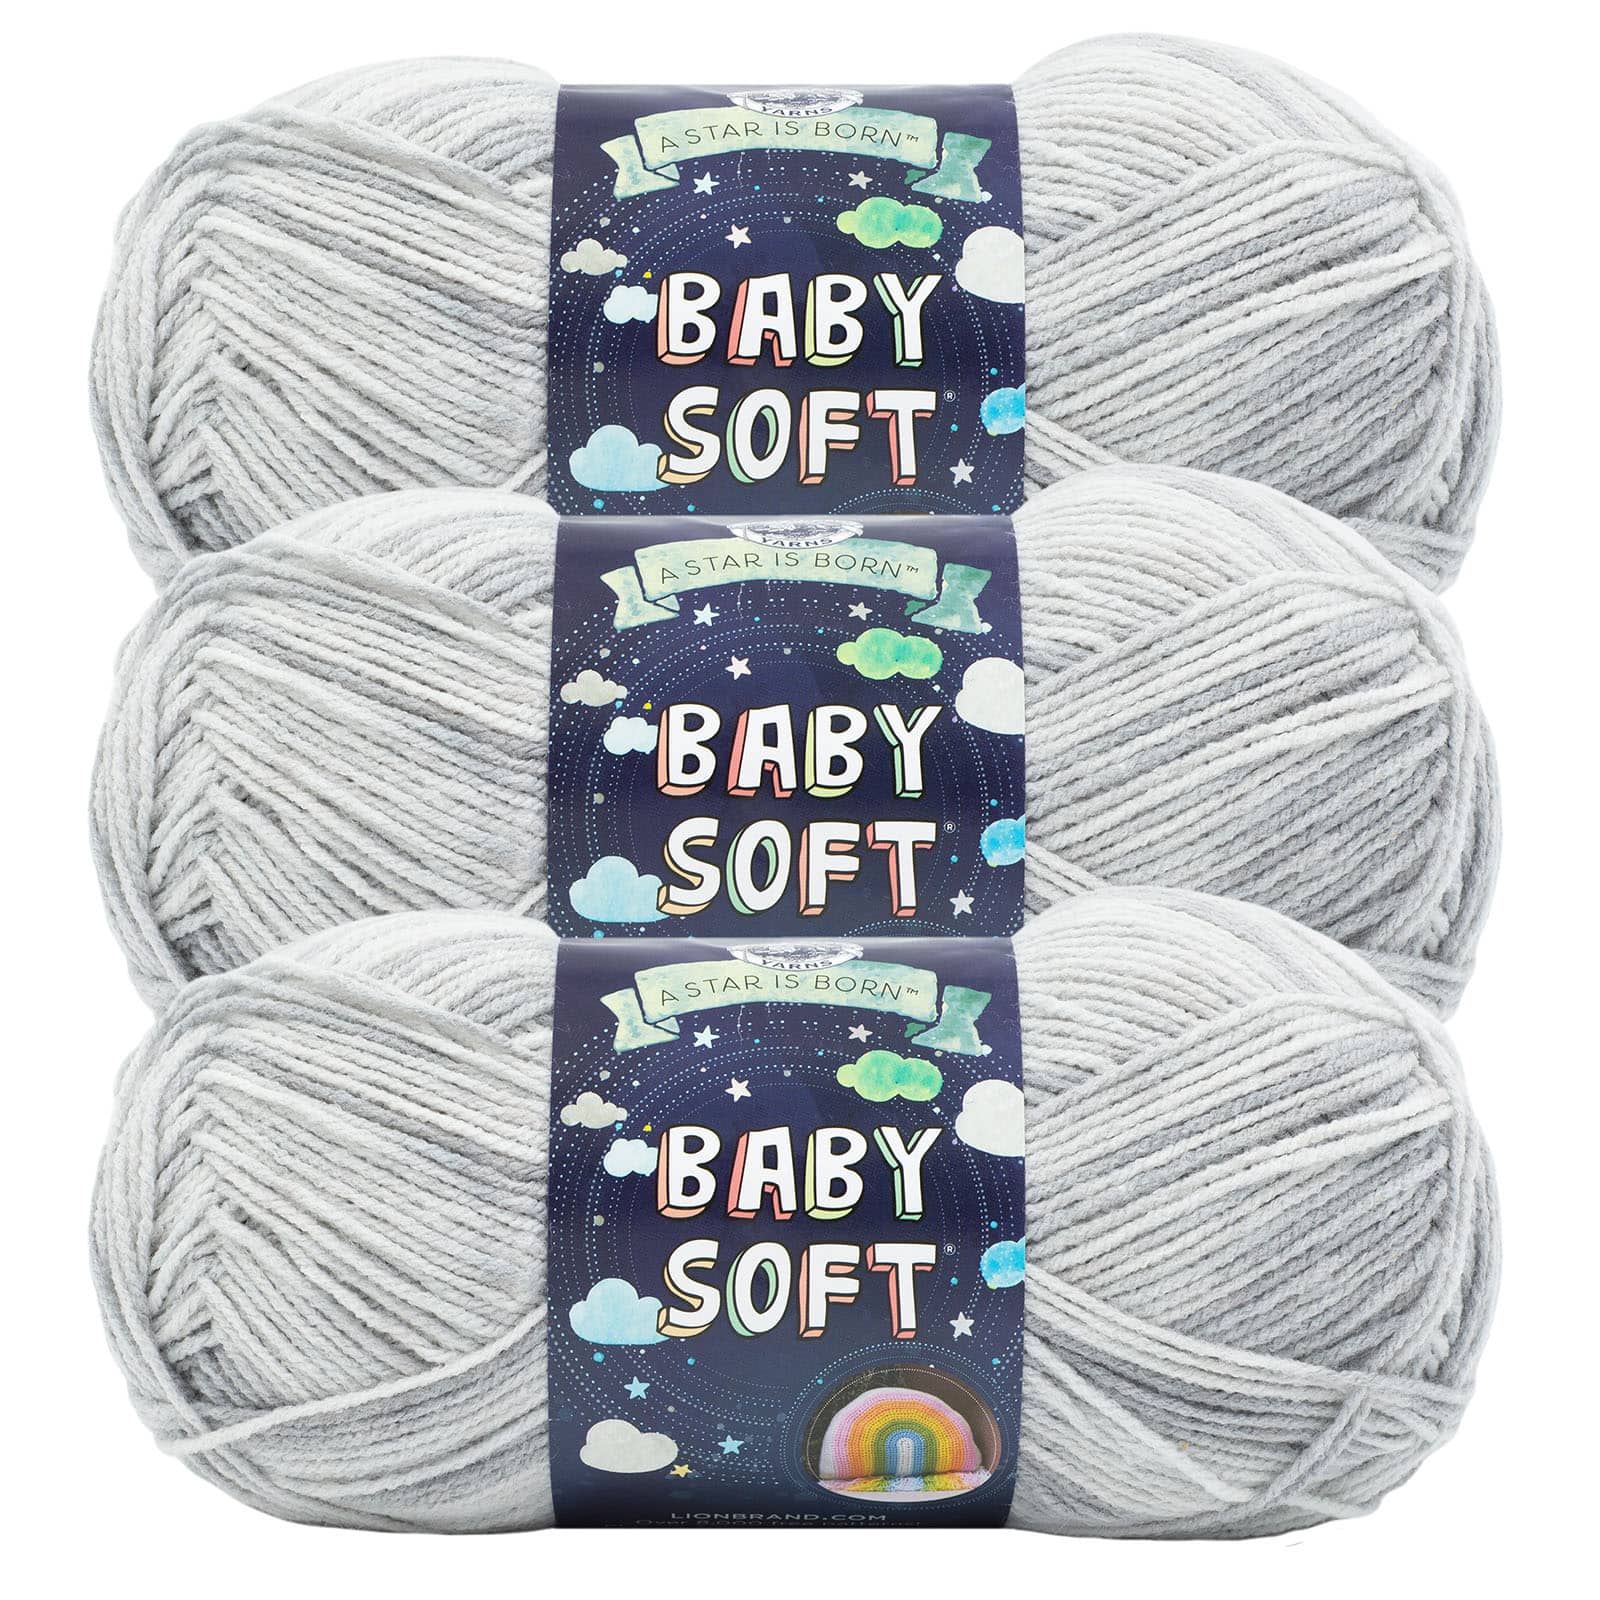 Tan Oh Baby Organic Yarn 